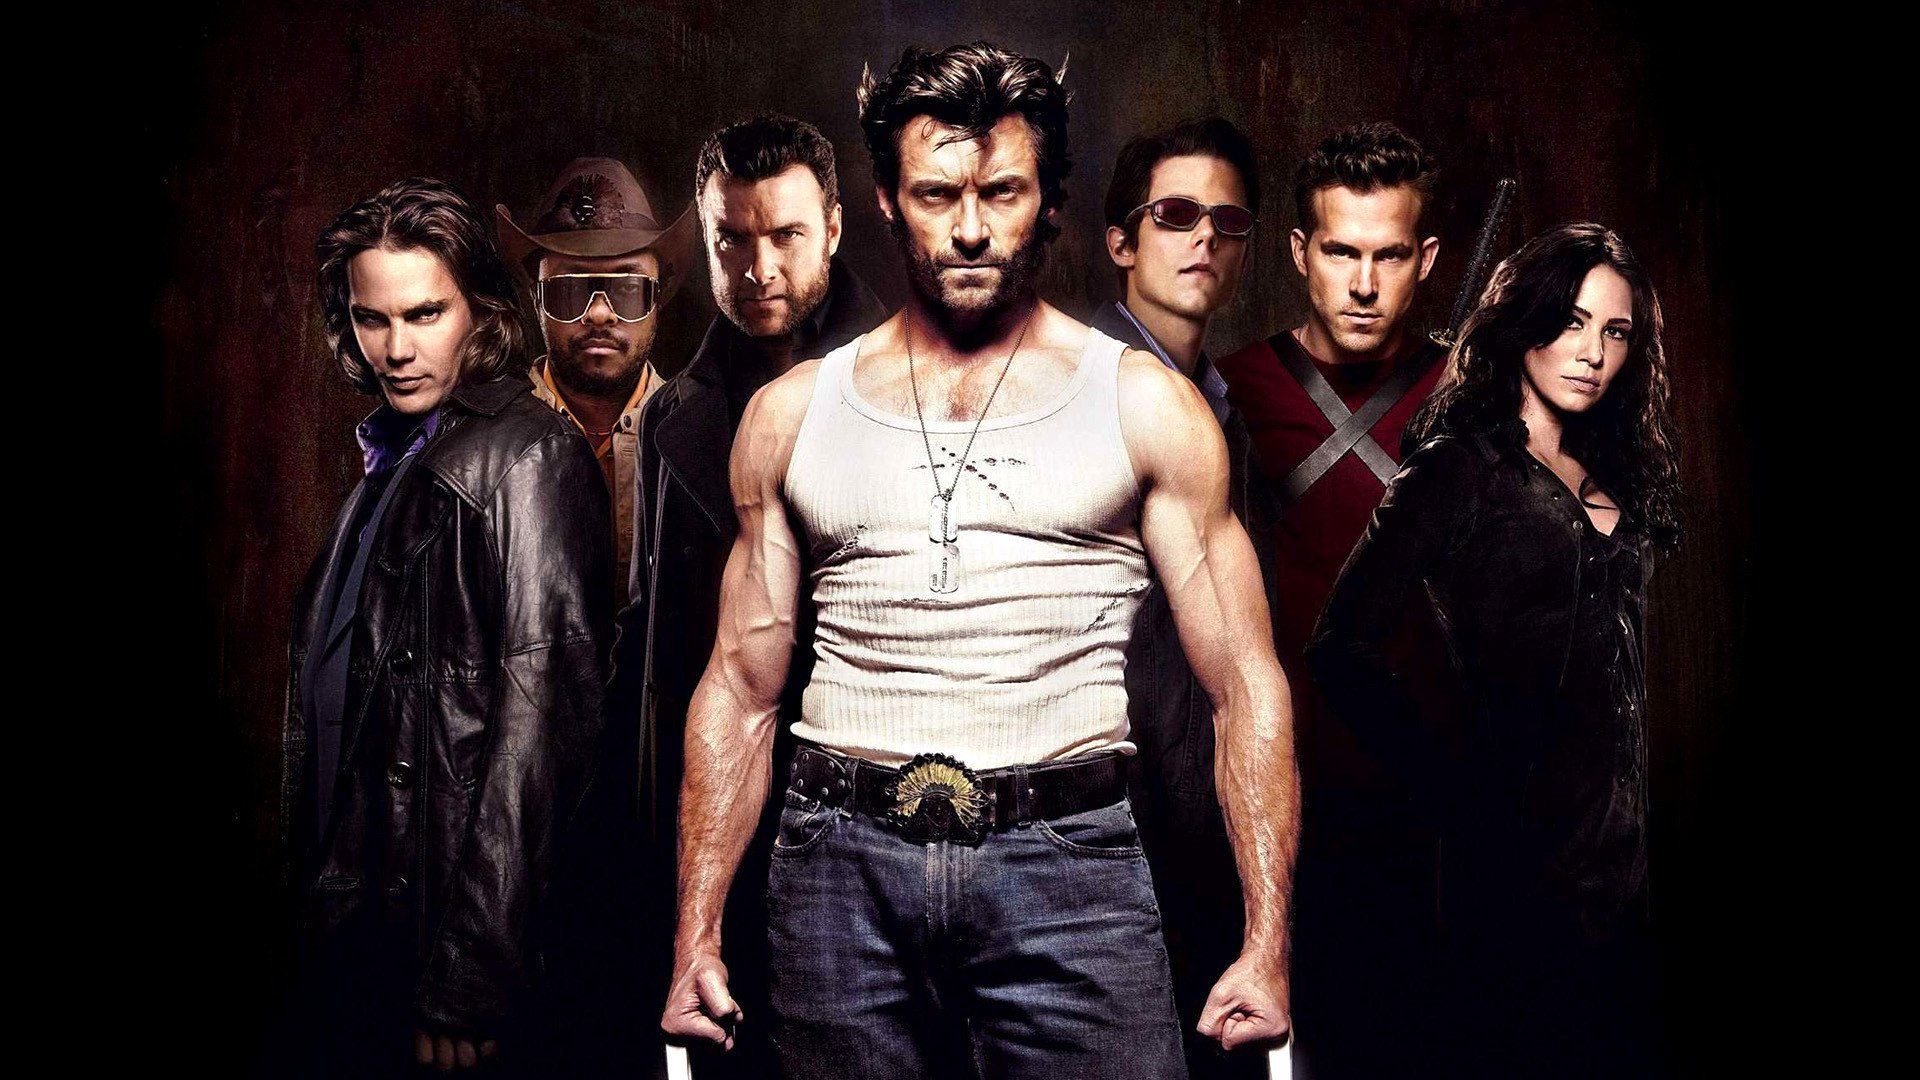 X Men Origins: Wolverine HD Wallpaper. Background Image